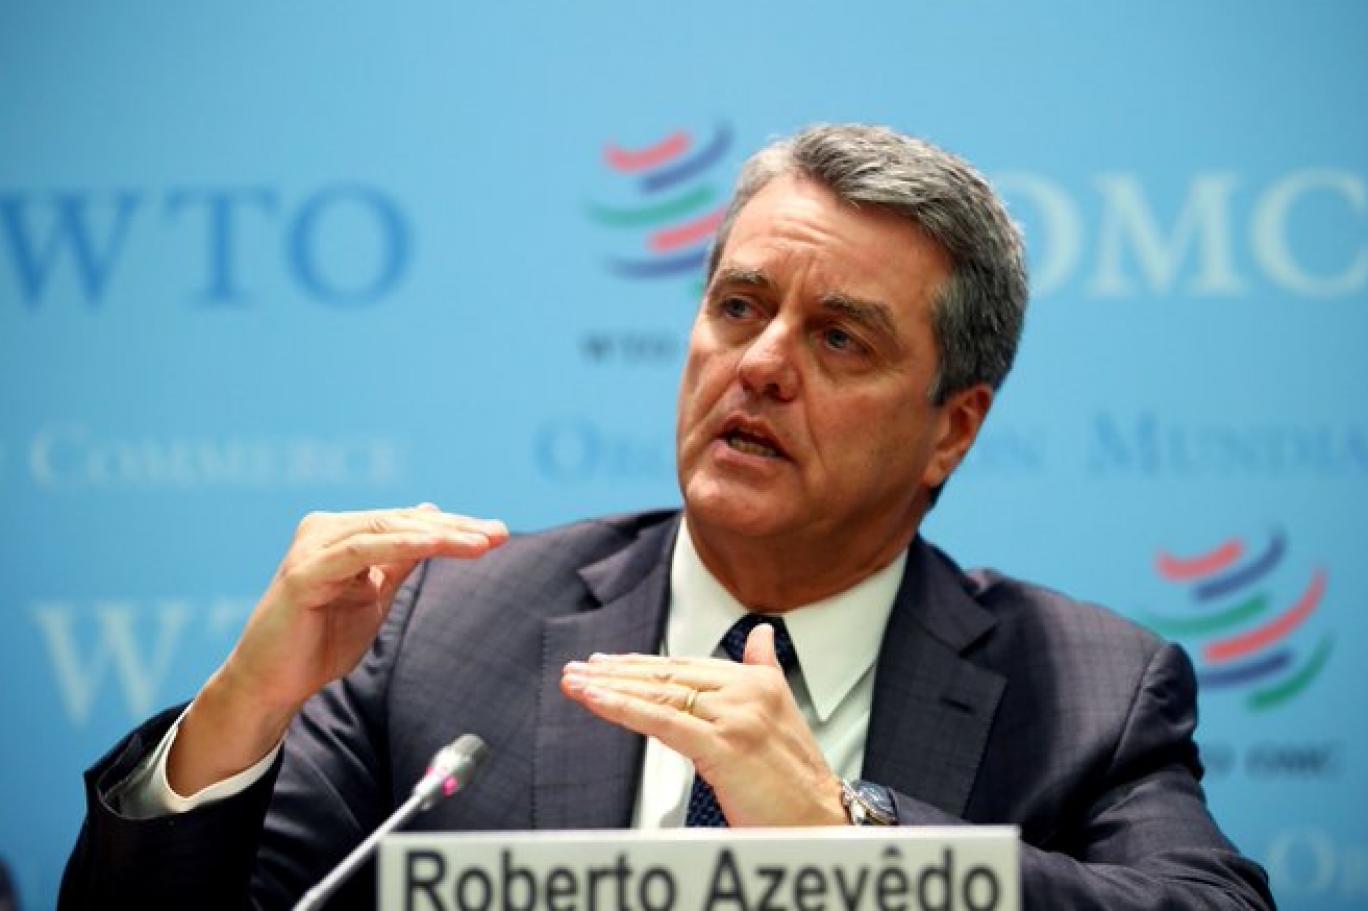 استقالة روبرتو أزيفيدو مدير منظمة التجارة العالمية اندبندنت عربية